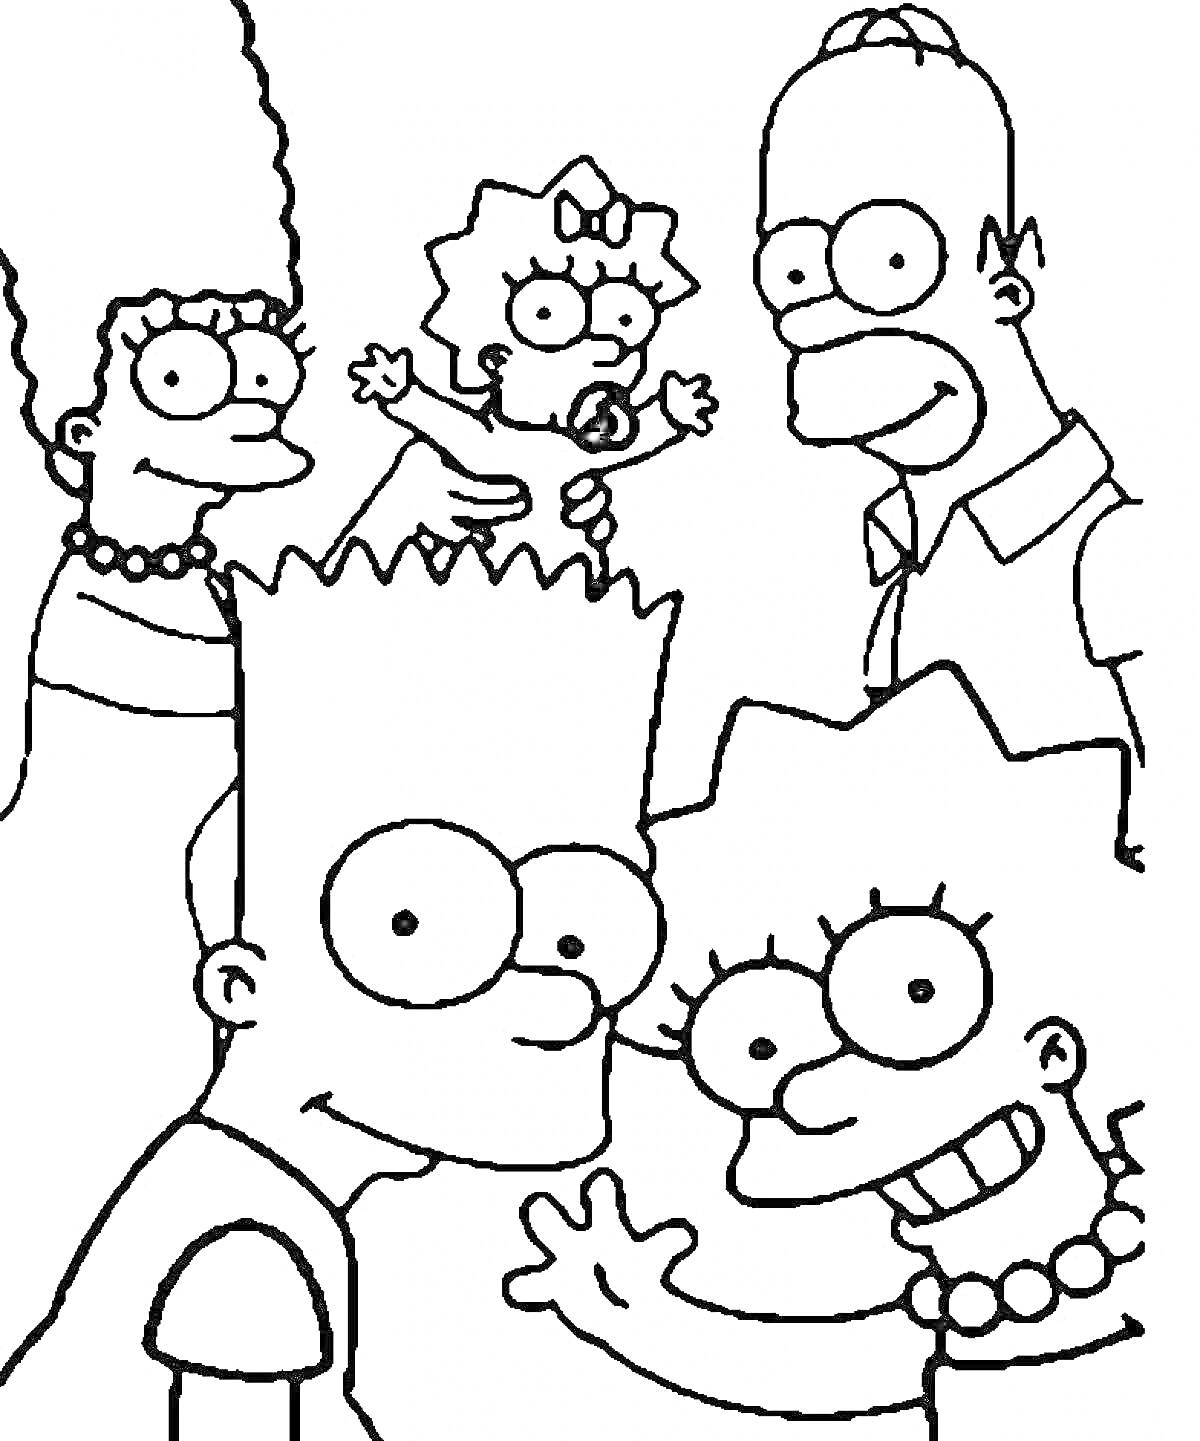 Семья Симпсонов - мама, папа, двое детей и младенец